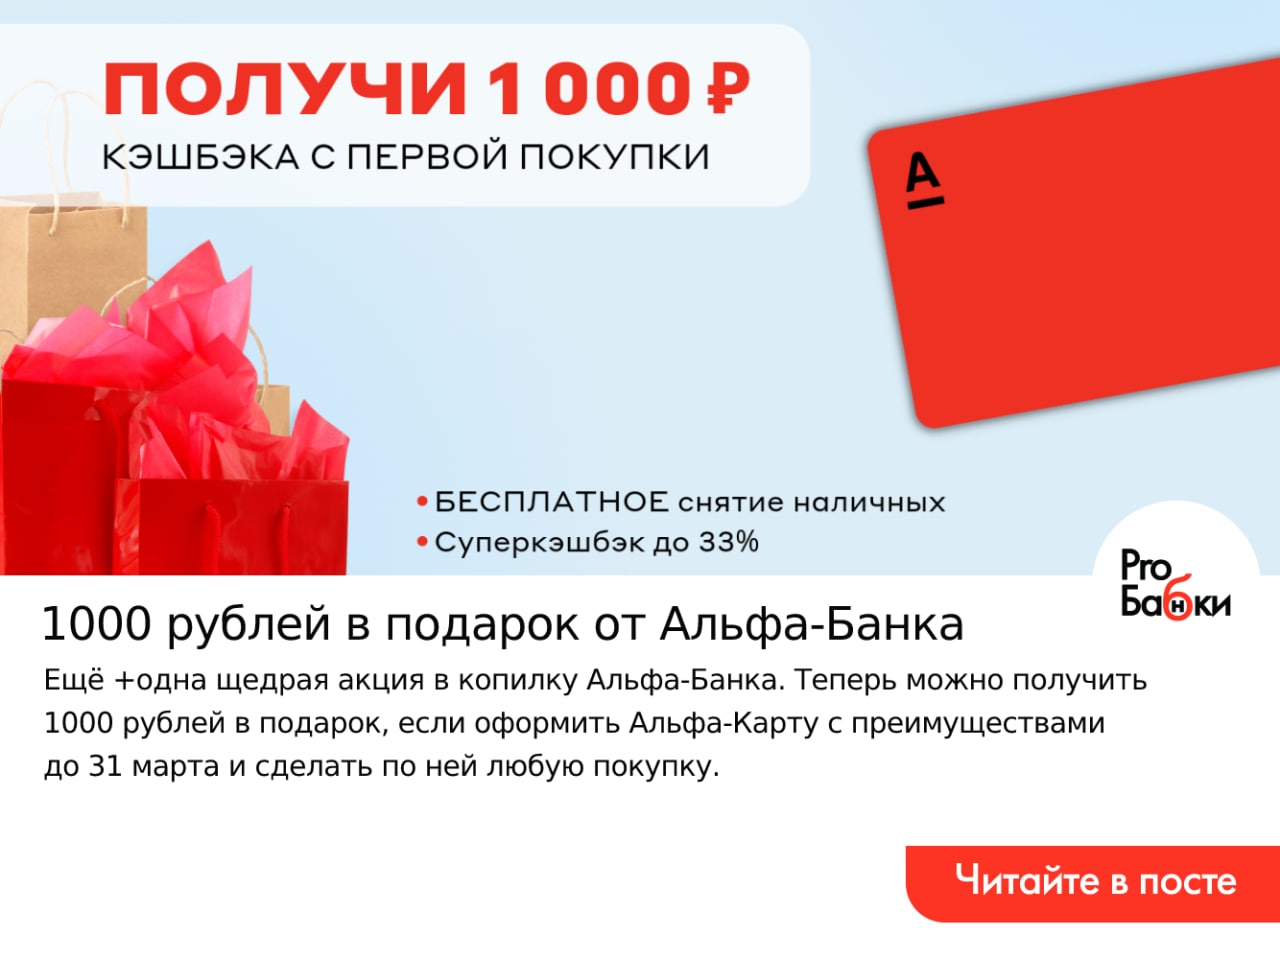 бездепозитный бонус за регистрацию 1000 рублей